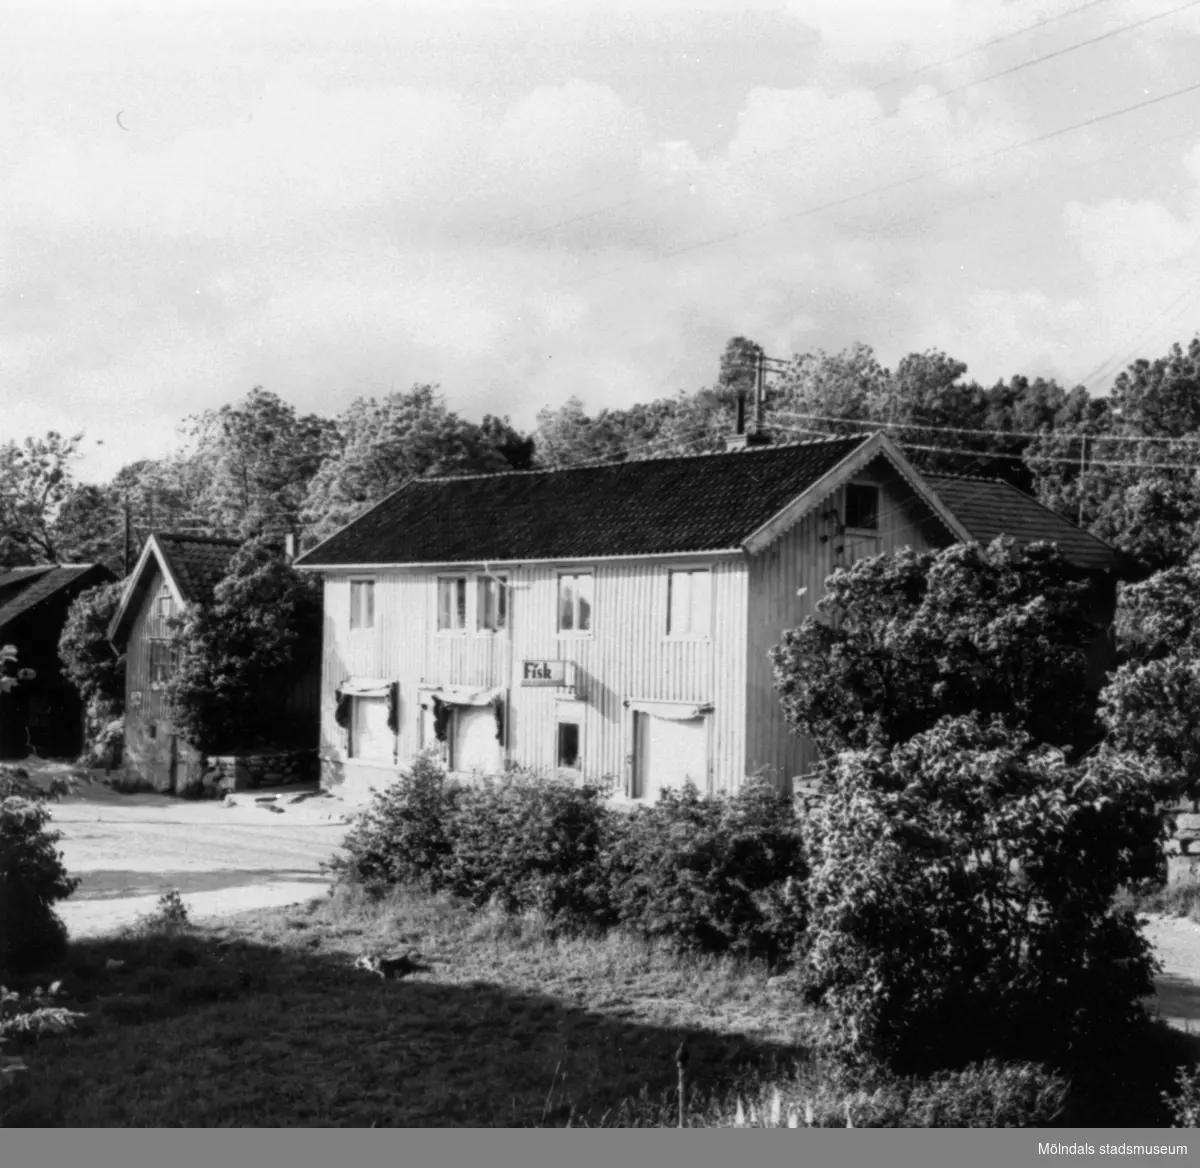 Gamla huset bakom sjukkassan. Fisk, charkuteriaffär i Annestorp, 1951.